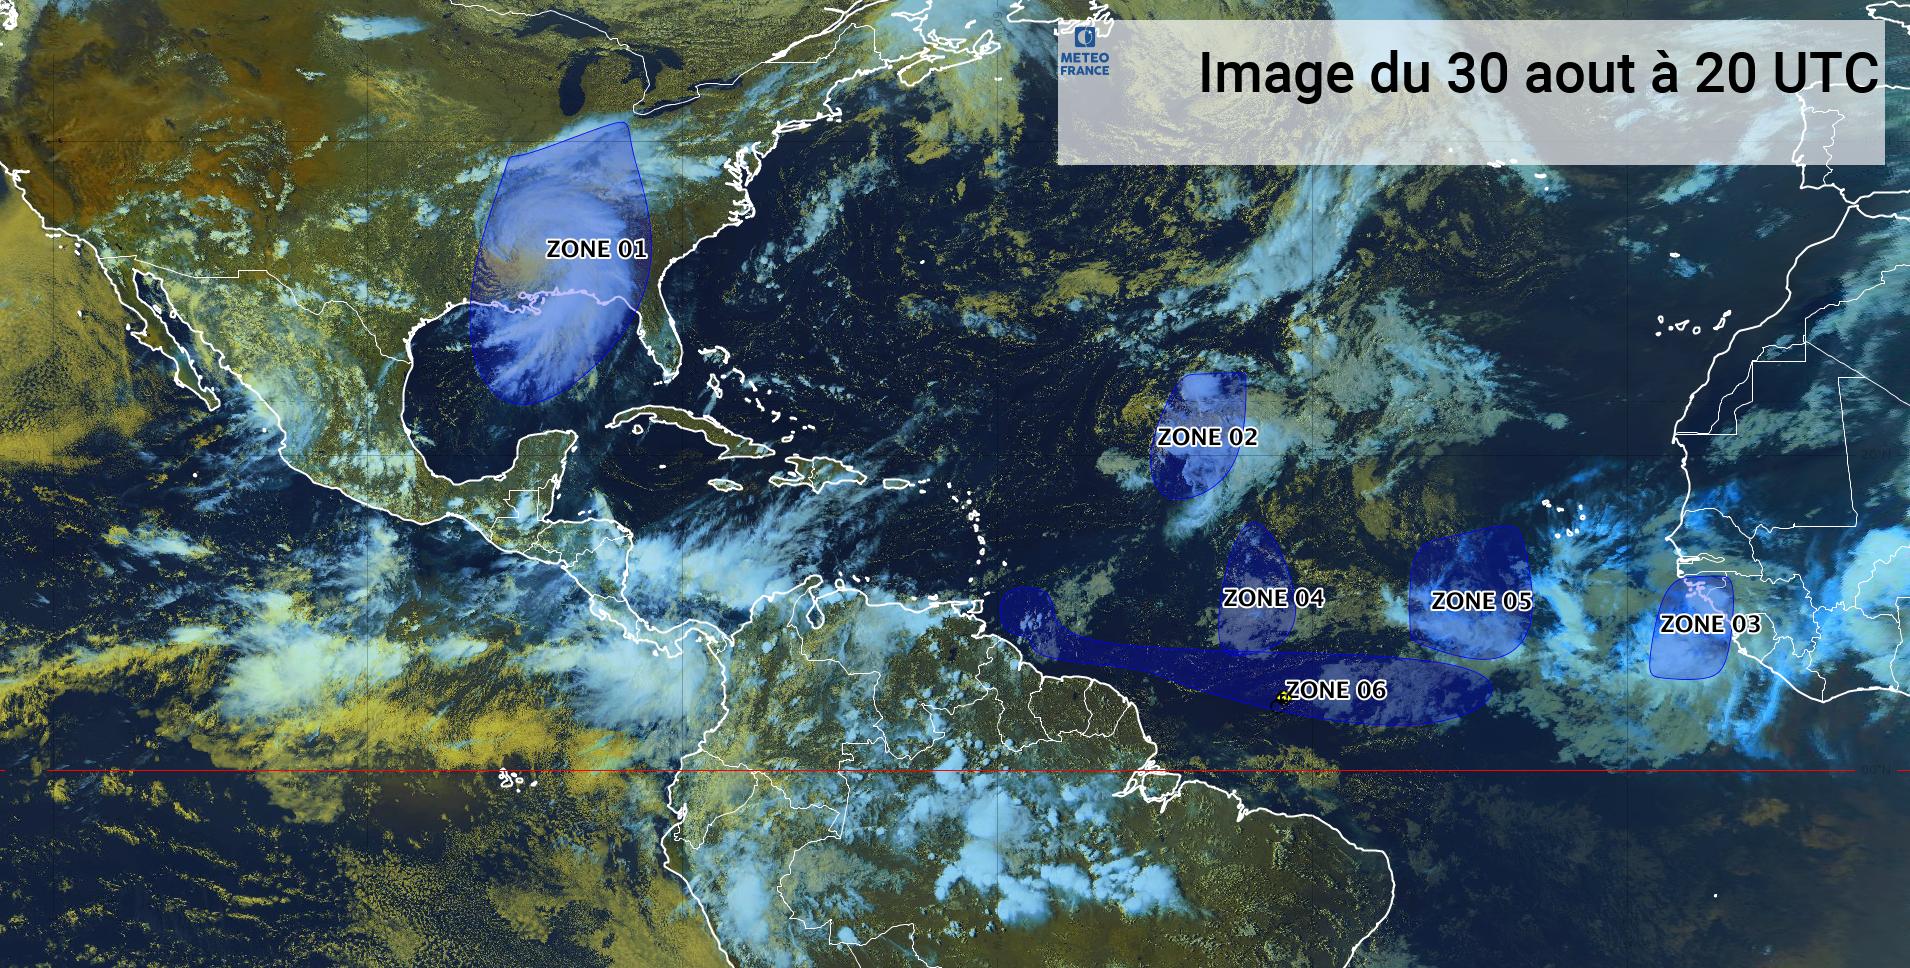     Ida n'est plus une menace, la tempête Kate évite les Antilles et une onde approche

